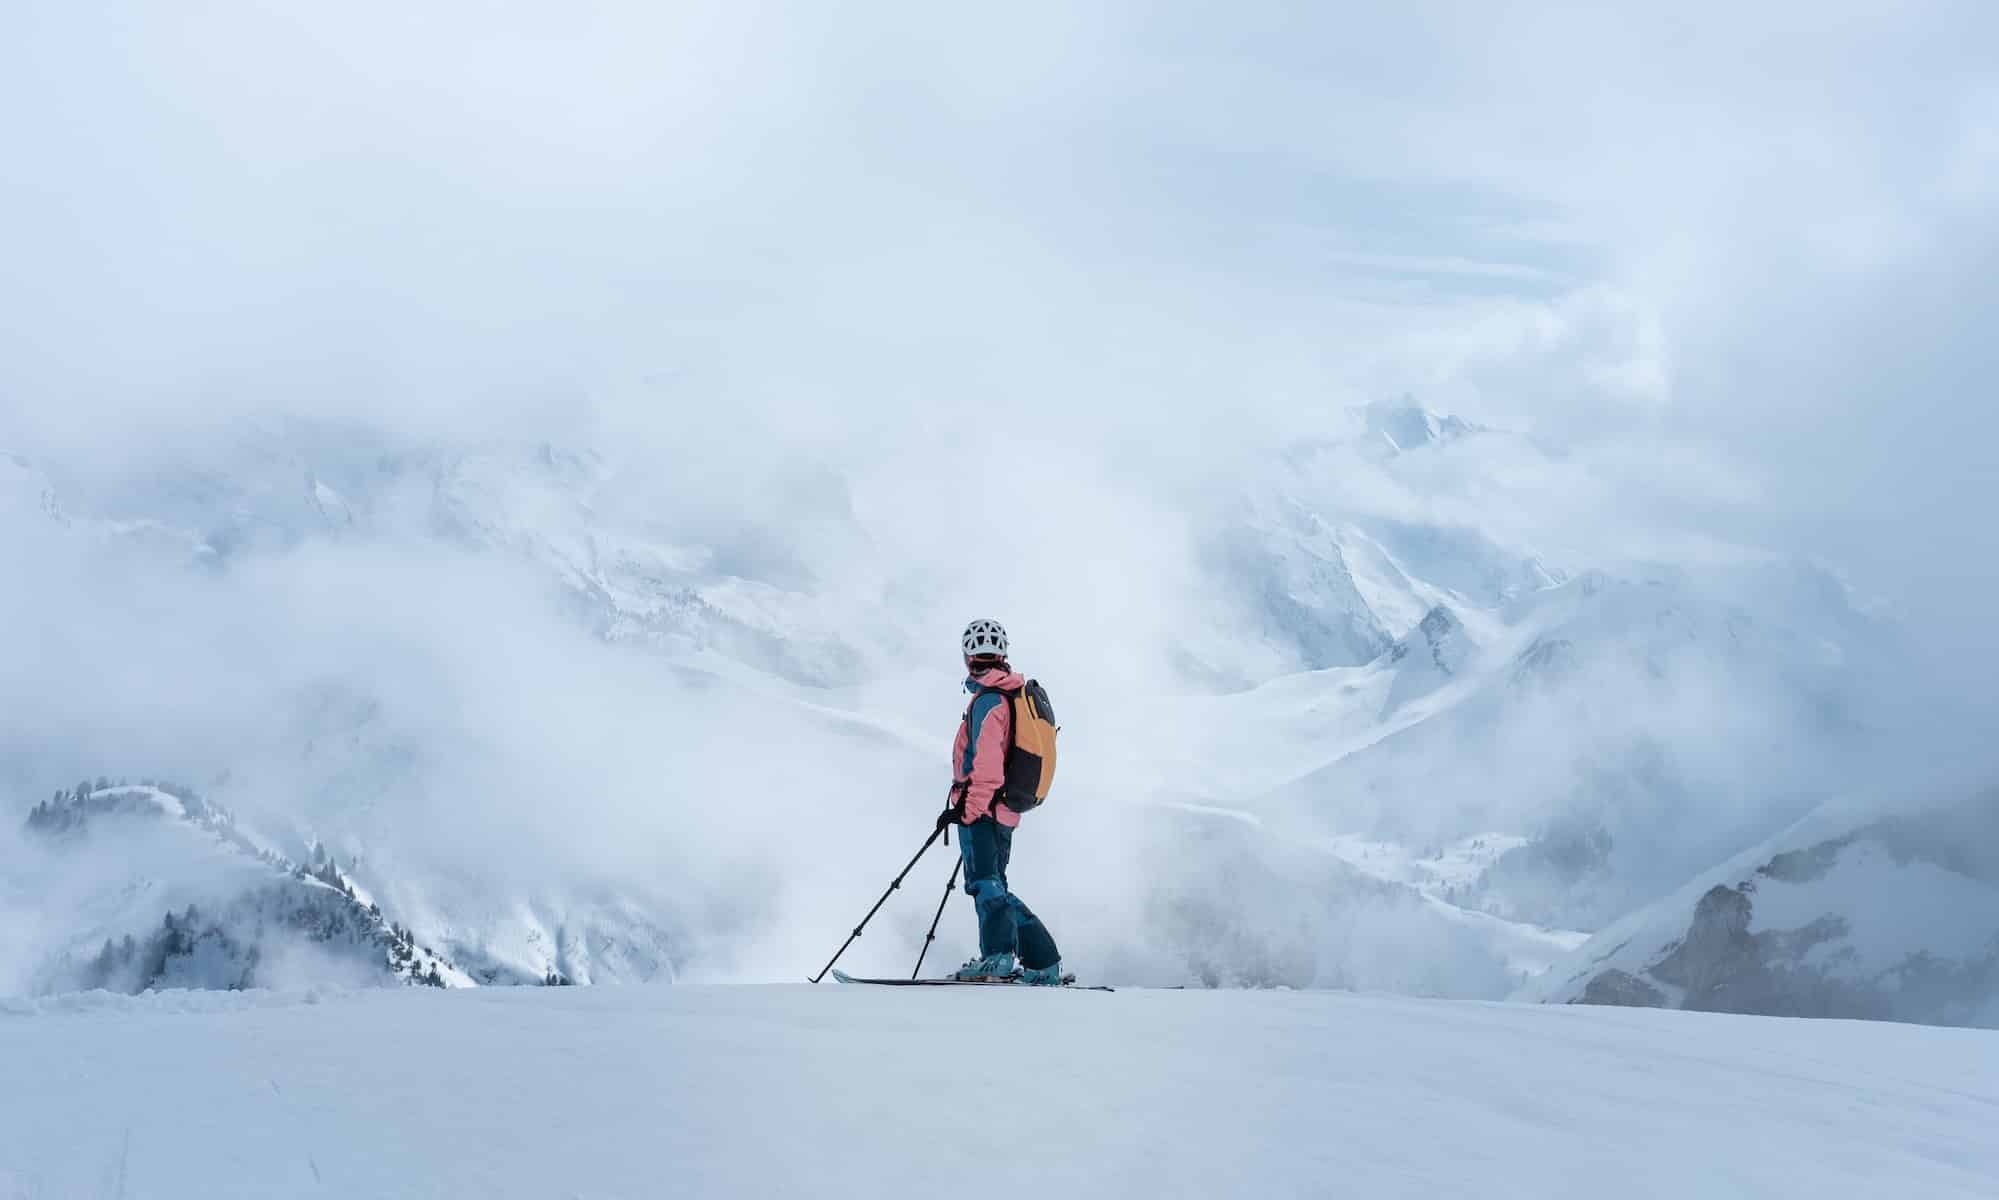 Comprar versus alquilar esquís: pros y contras independientes